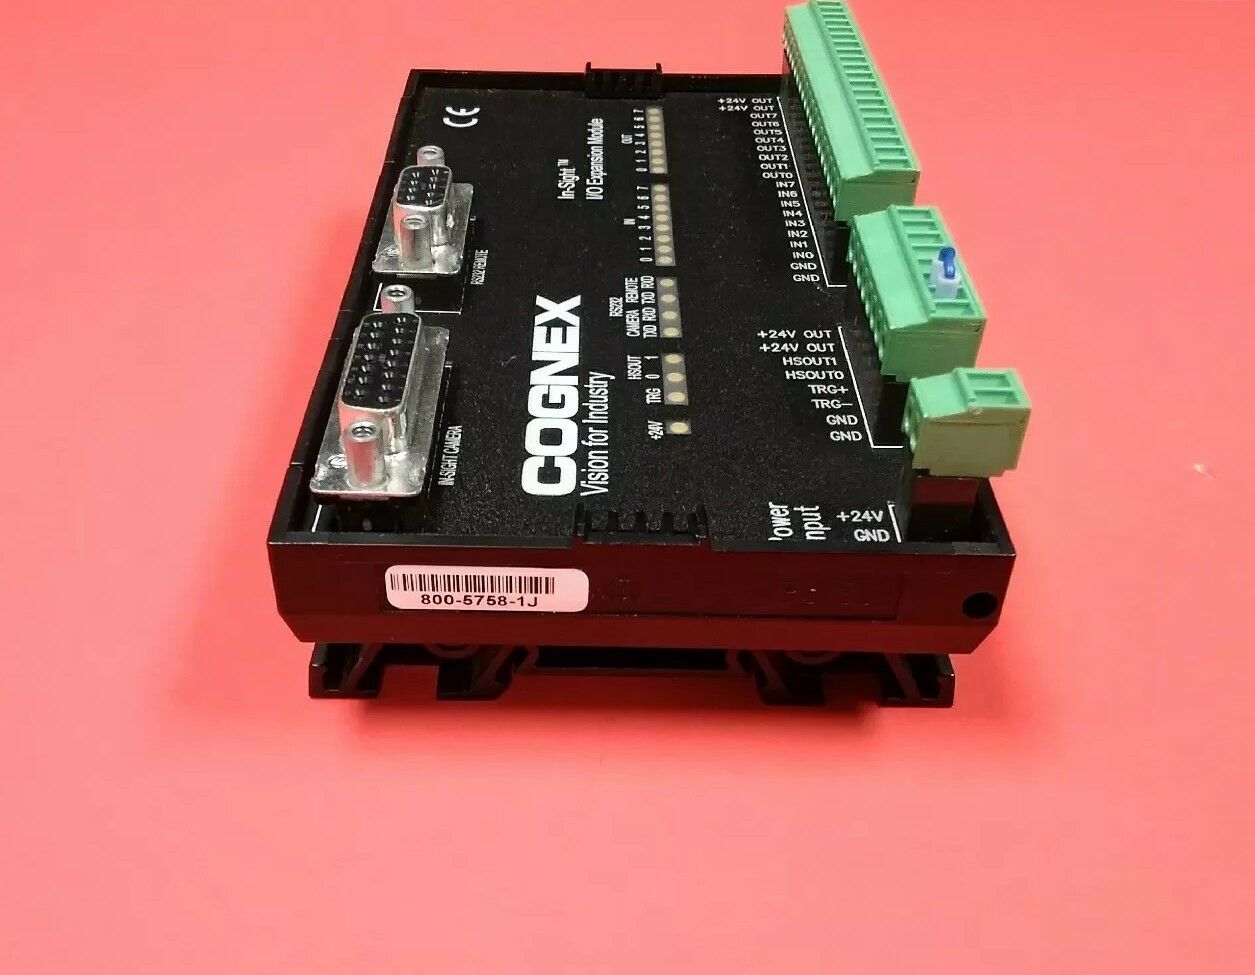 Cognex 800-5758-1J MPS 80 In-Sight I/O Expansion Module                     3D-3